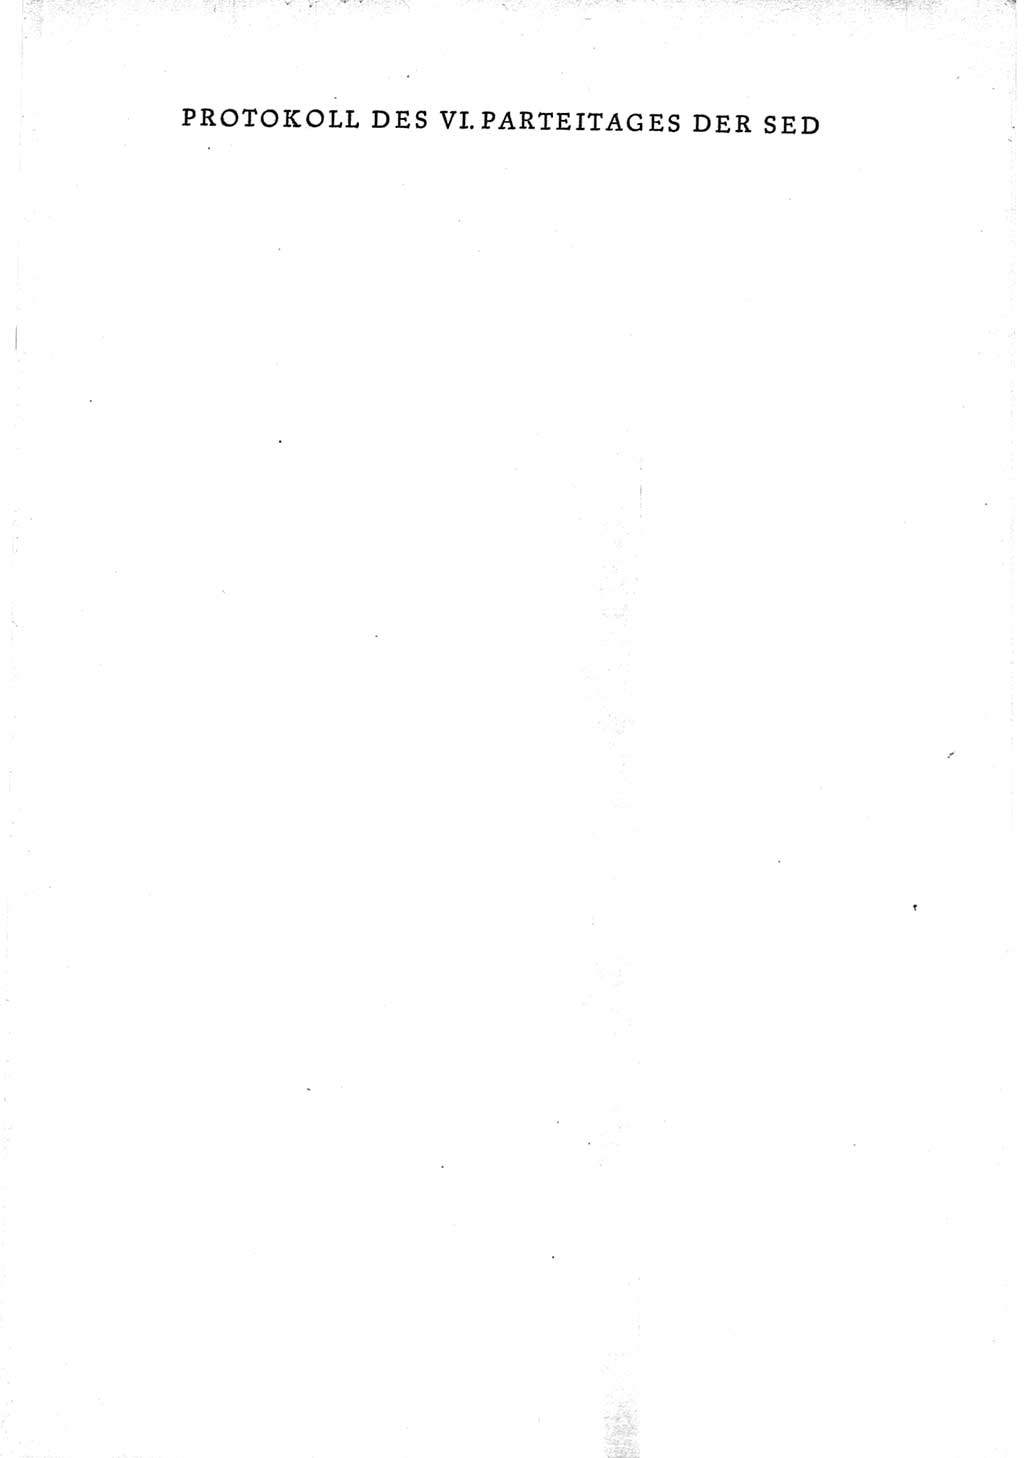 Protokoll der Verhandlungen des Ⅵ. Parteitages der Sozialistischen Einheitspartei Deutschlands (SED) [Deutsche Demokratische Republik (DDR)] 1963, Band Ⅰ, Seite 1 (Prot. Verh. Ⅵ. PT SED DDR 1963, Bd. Ⅰ, S. 1)